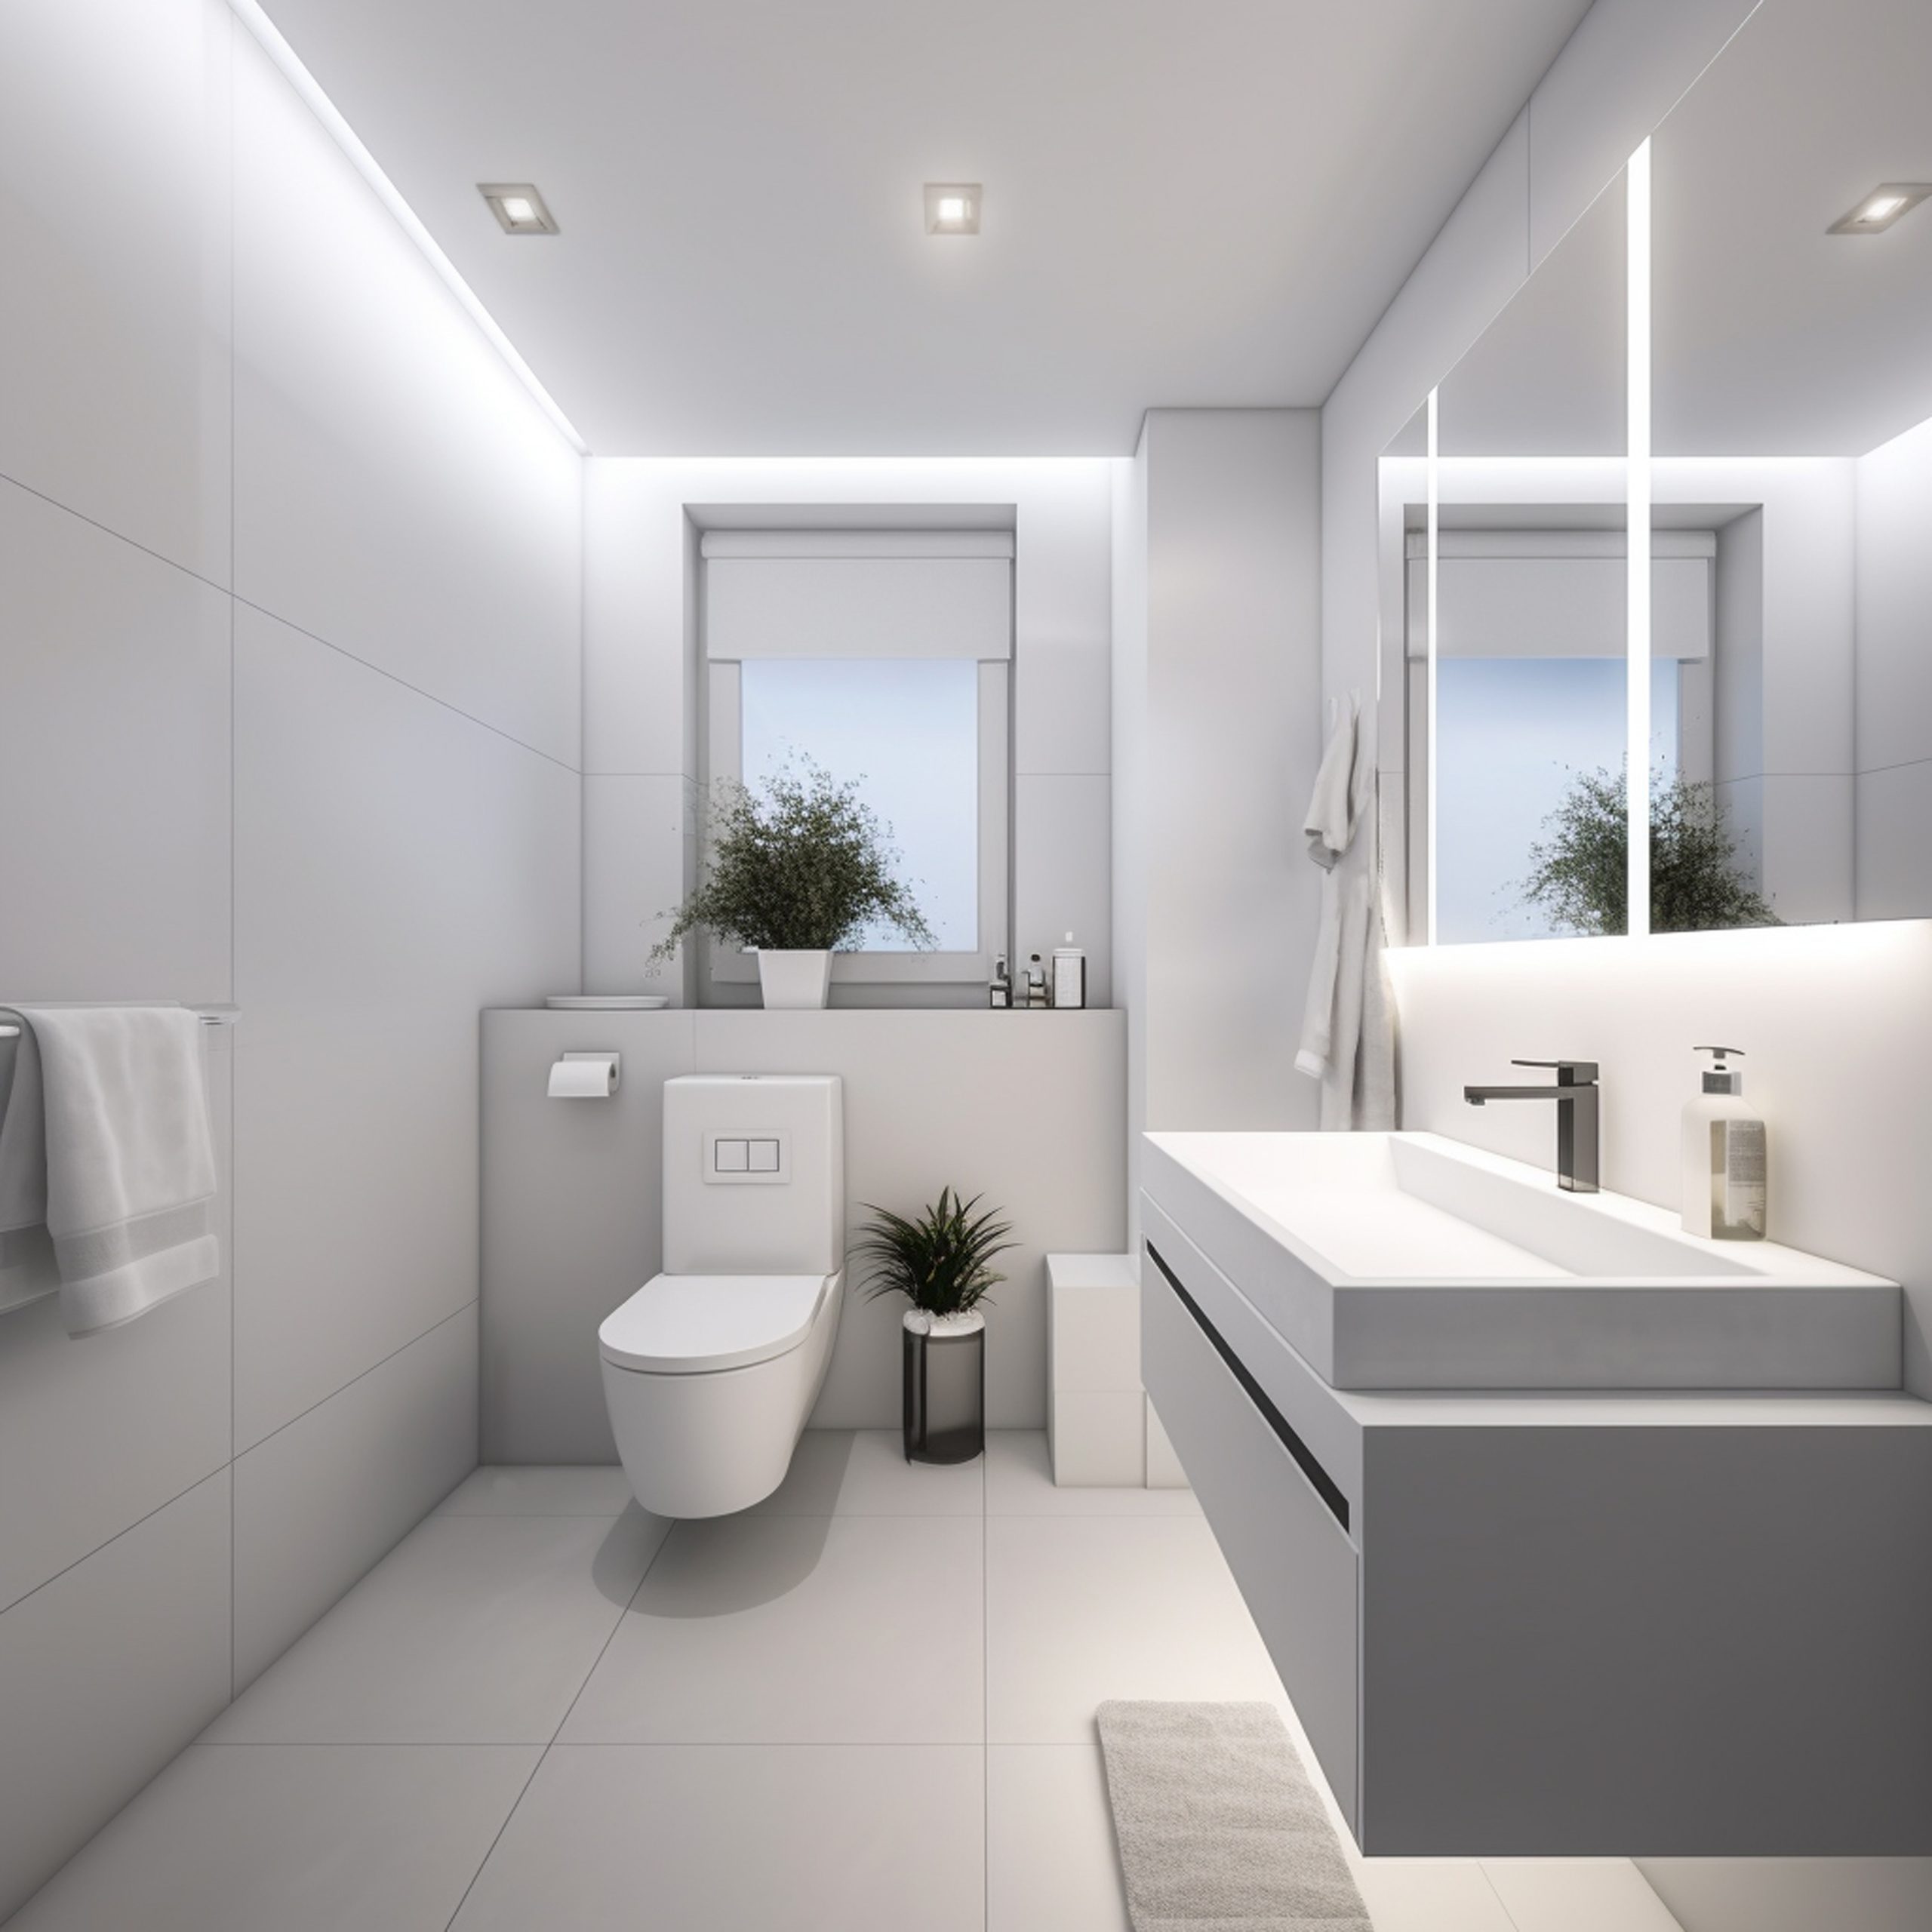 Une petite salle de bain modernement aménagée avec des solutions d'optimisation de l'espace